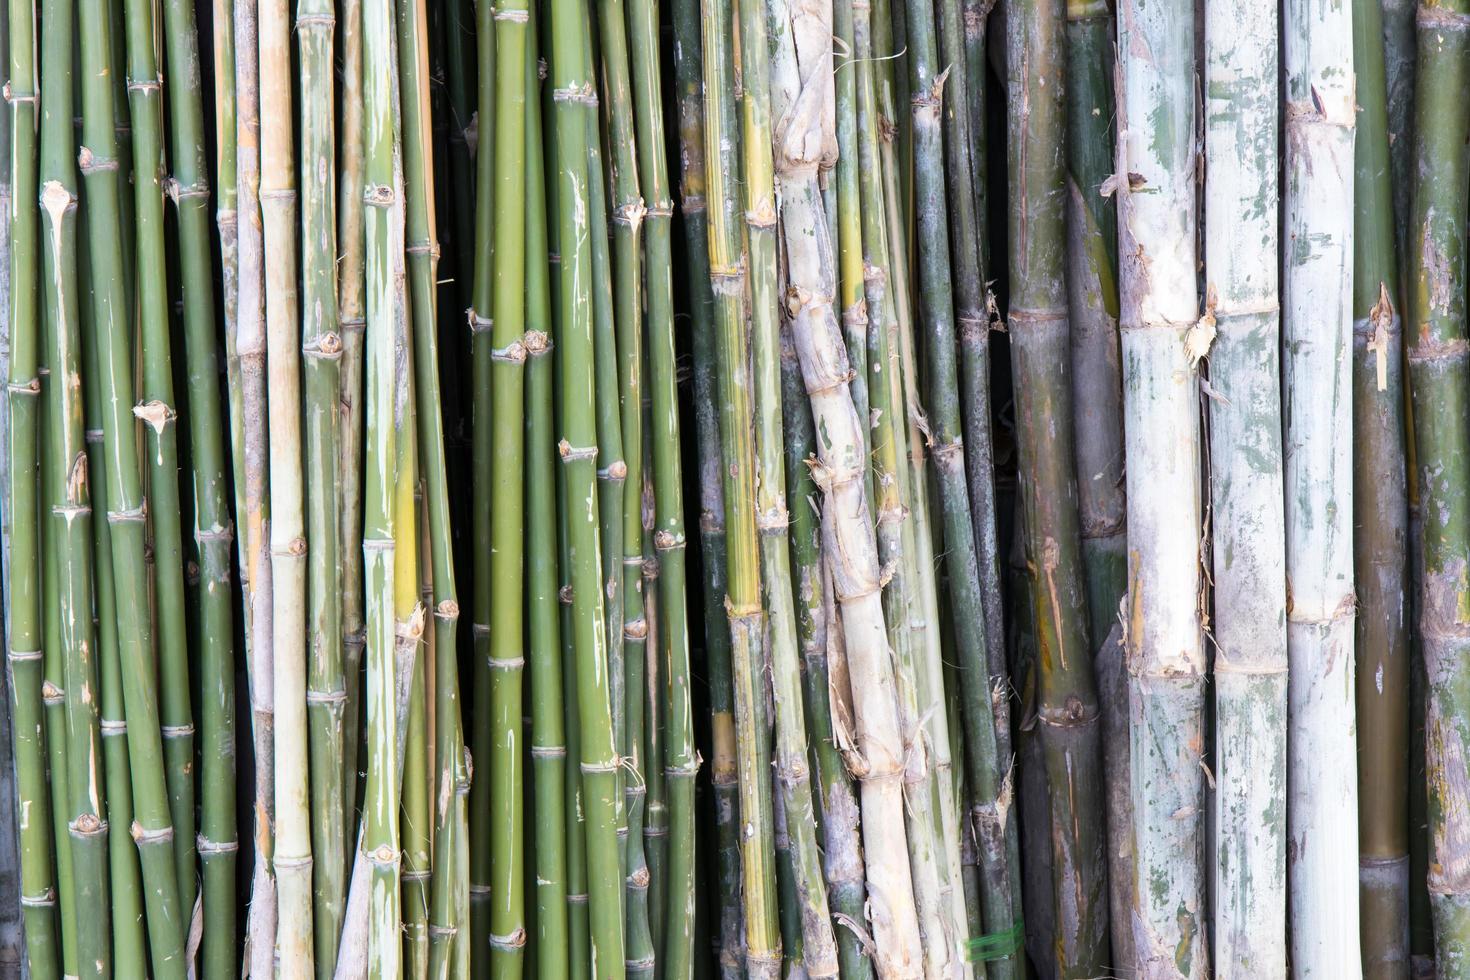 varejo forrado de bambu. foto